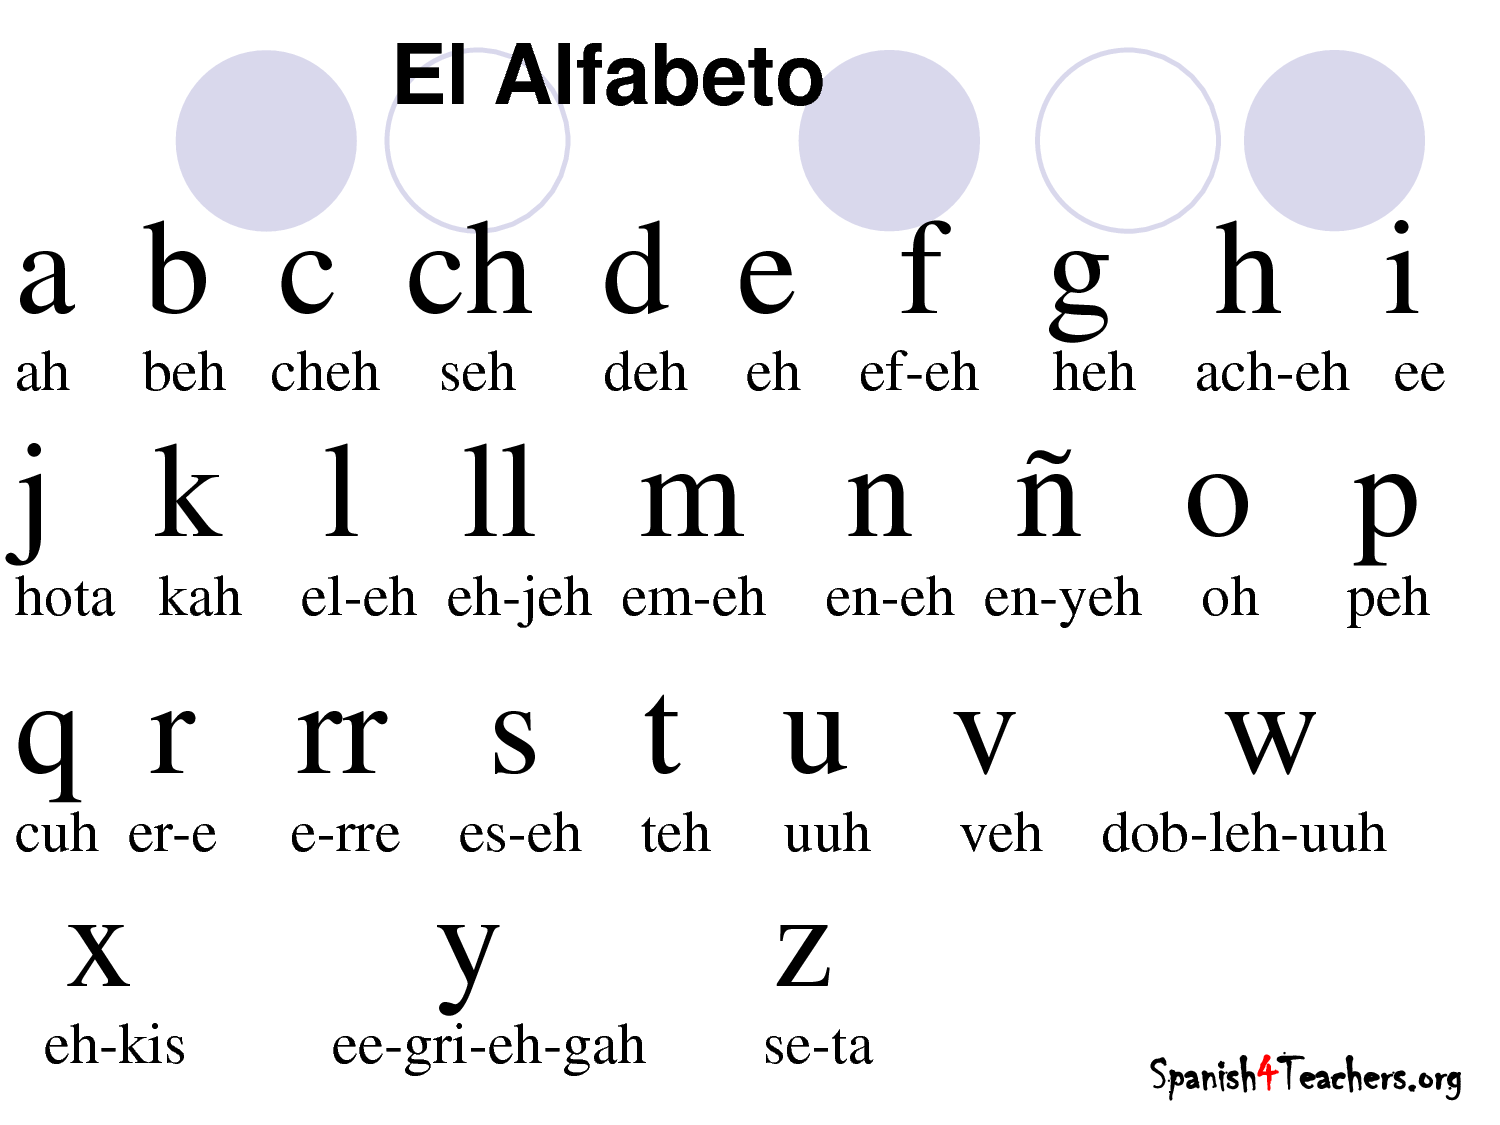 El Alfabeto De Espanol